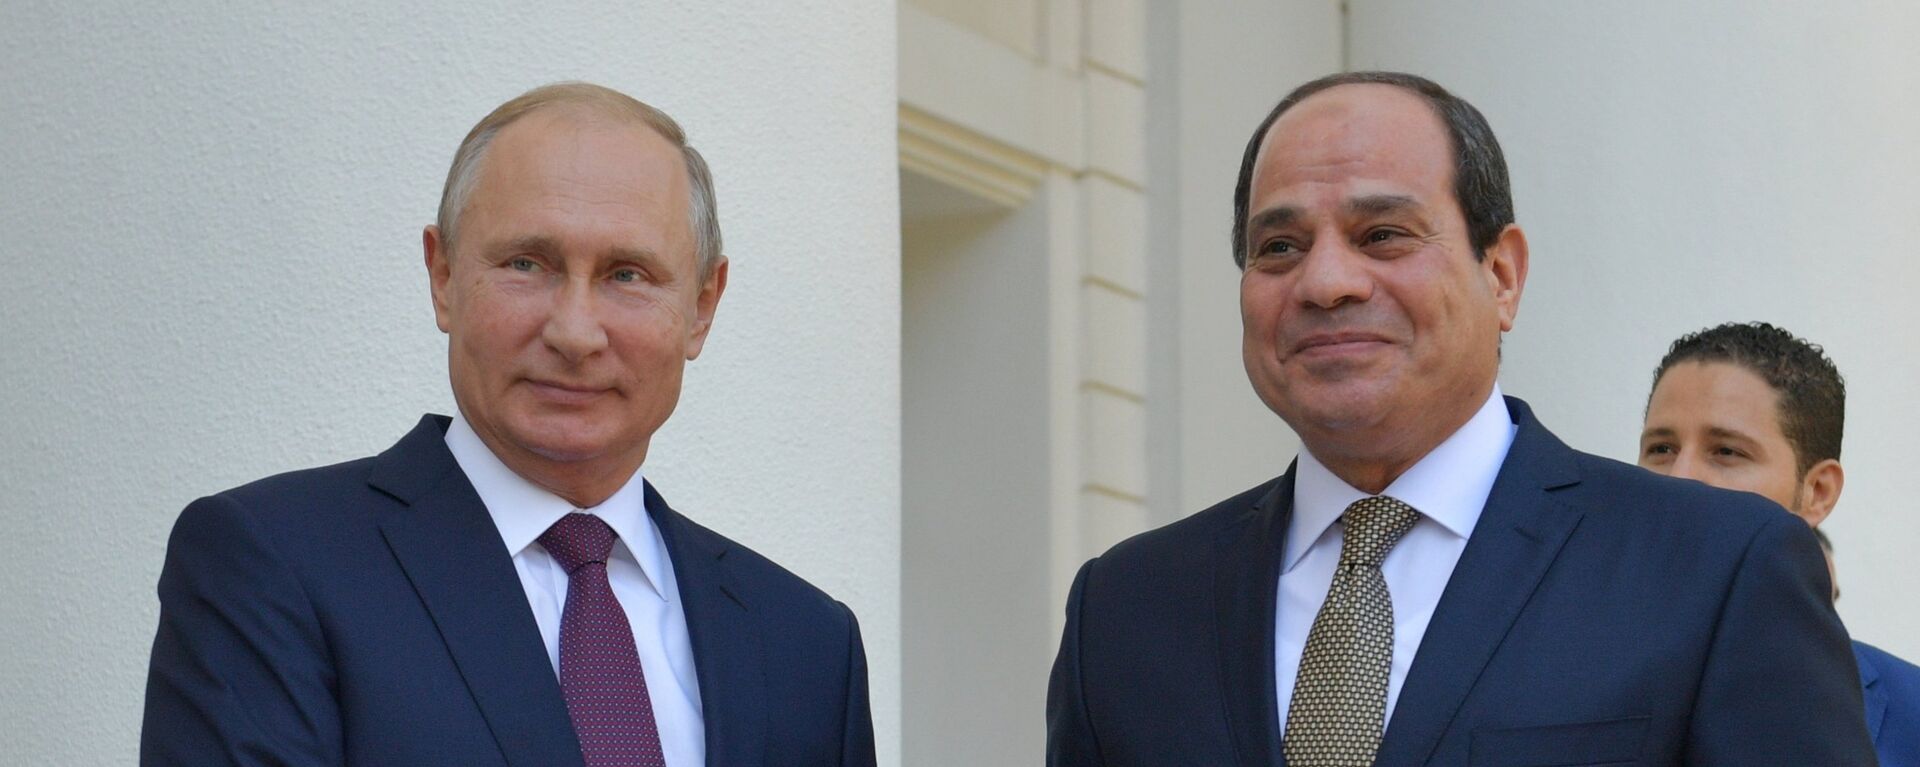 الرئيس الروسي فلاديمير بوتين والرئيس المصري عبد الفتاح السيسي - سبوتنيك عربي, 1920, 08.07.2021